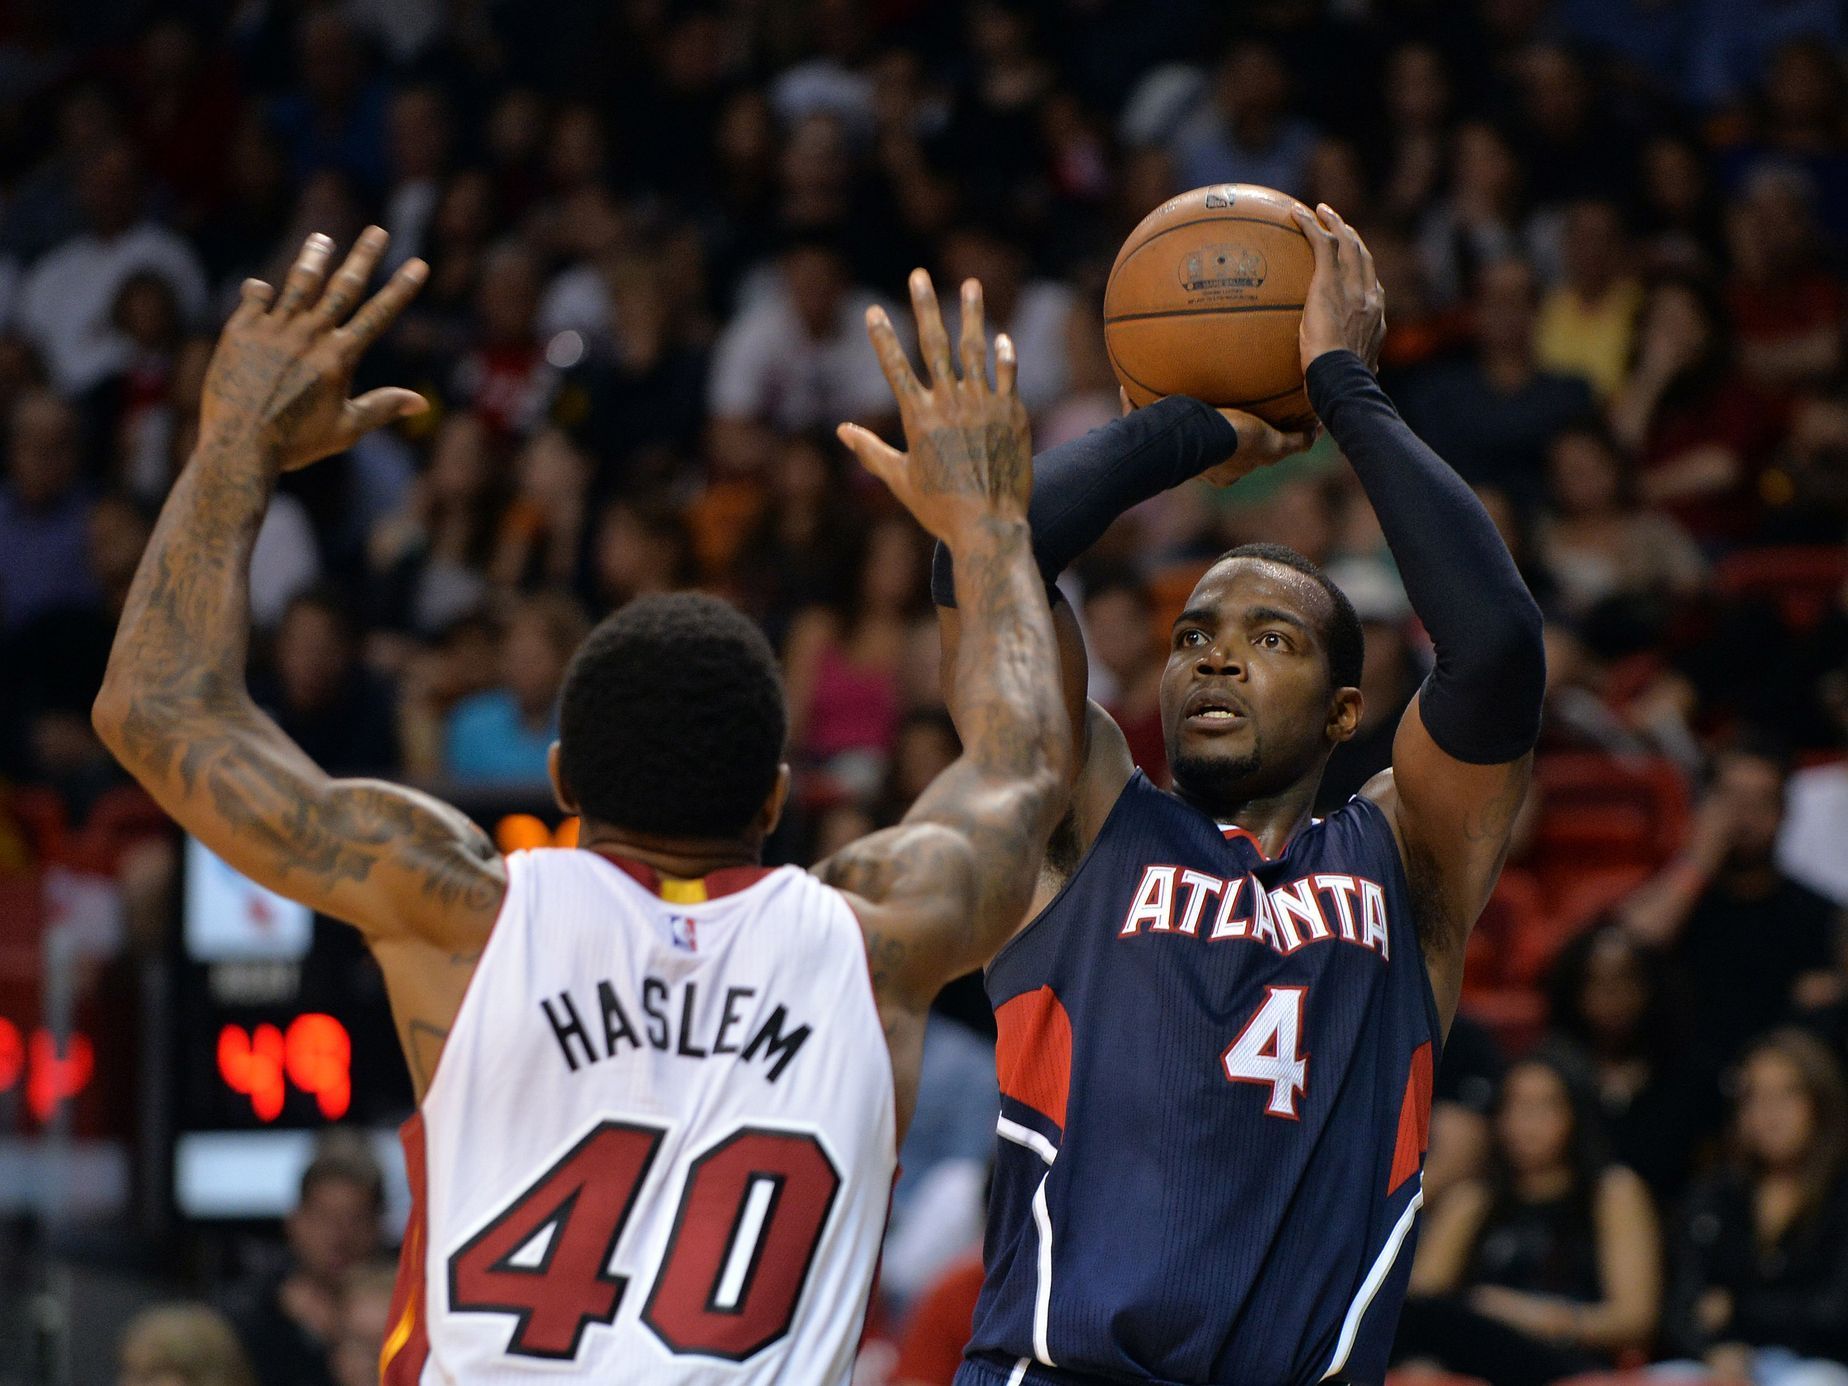 NBA: Atlanta Hawks at Miami Heat (Millslap, Haslem)